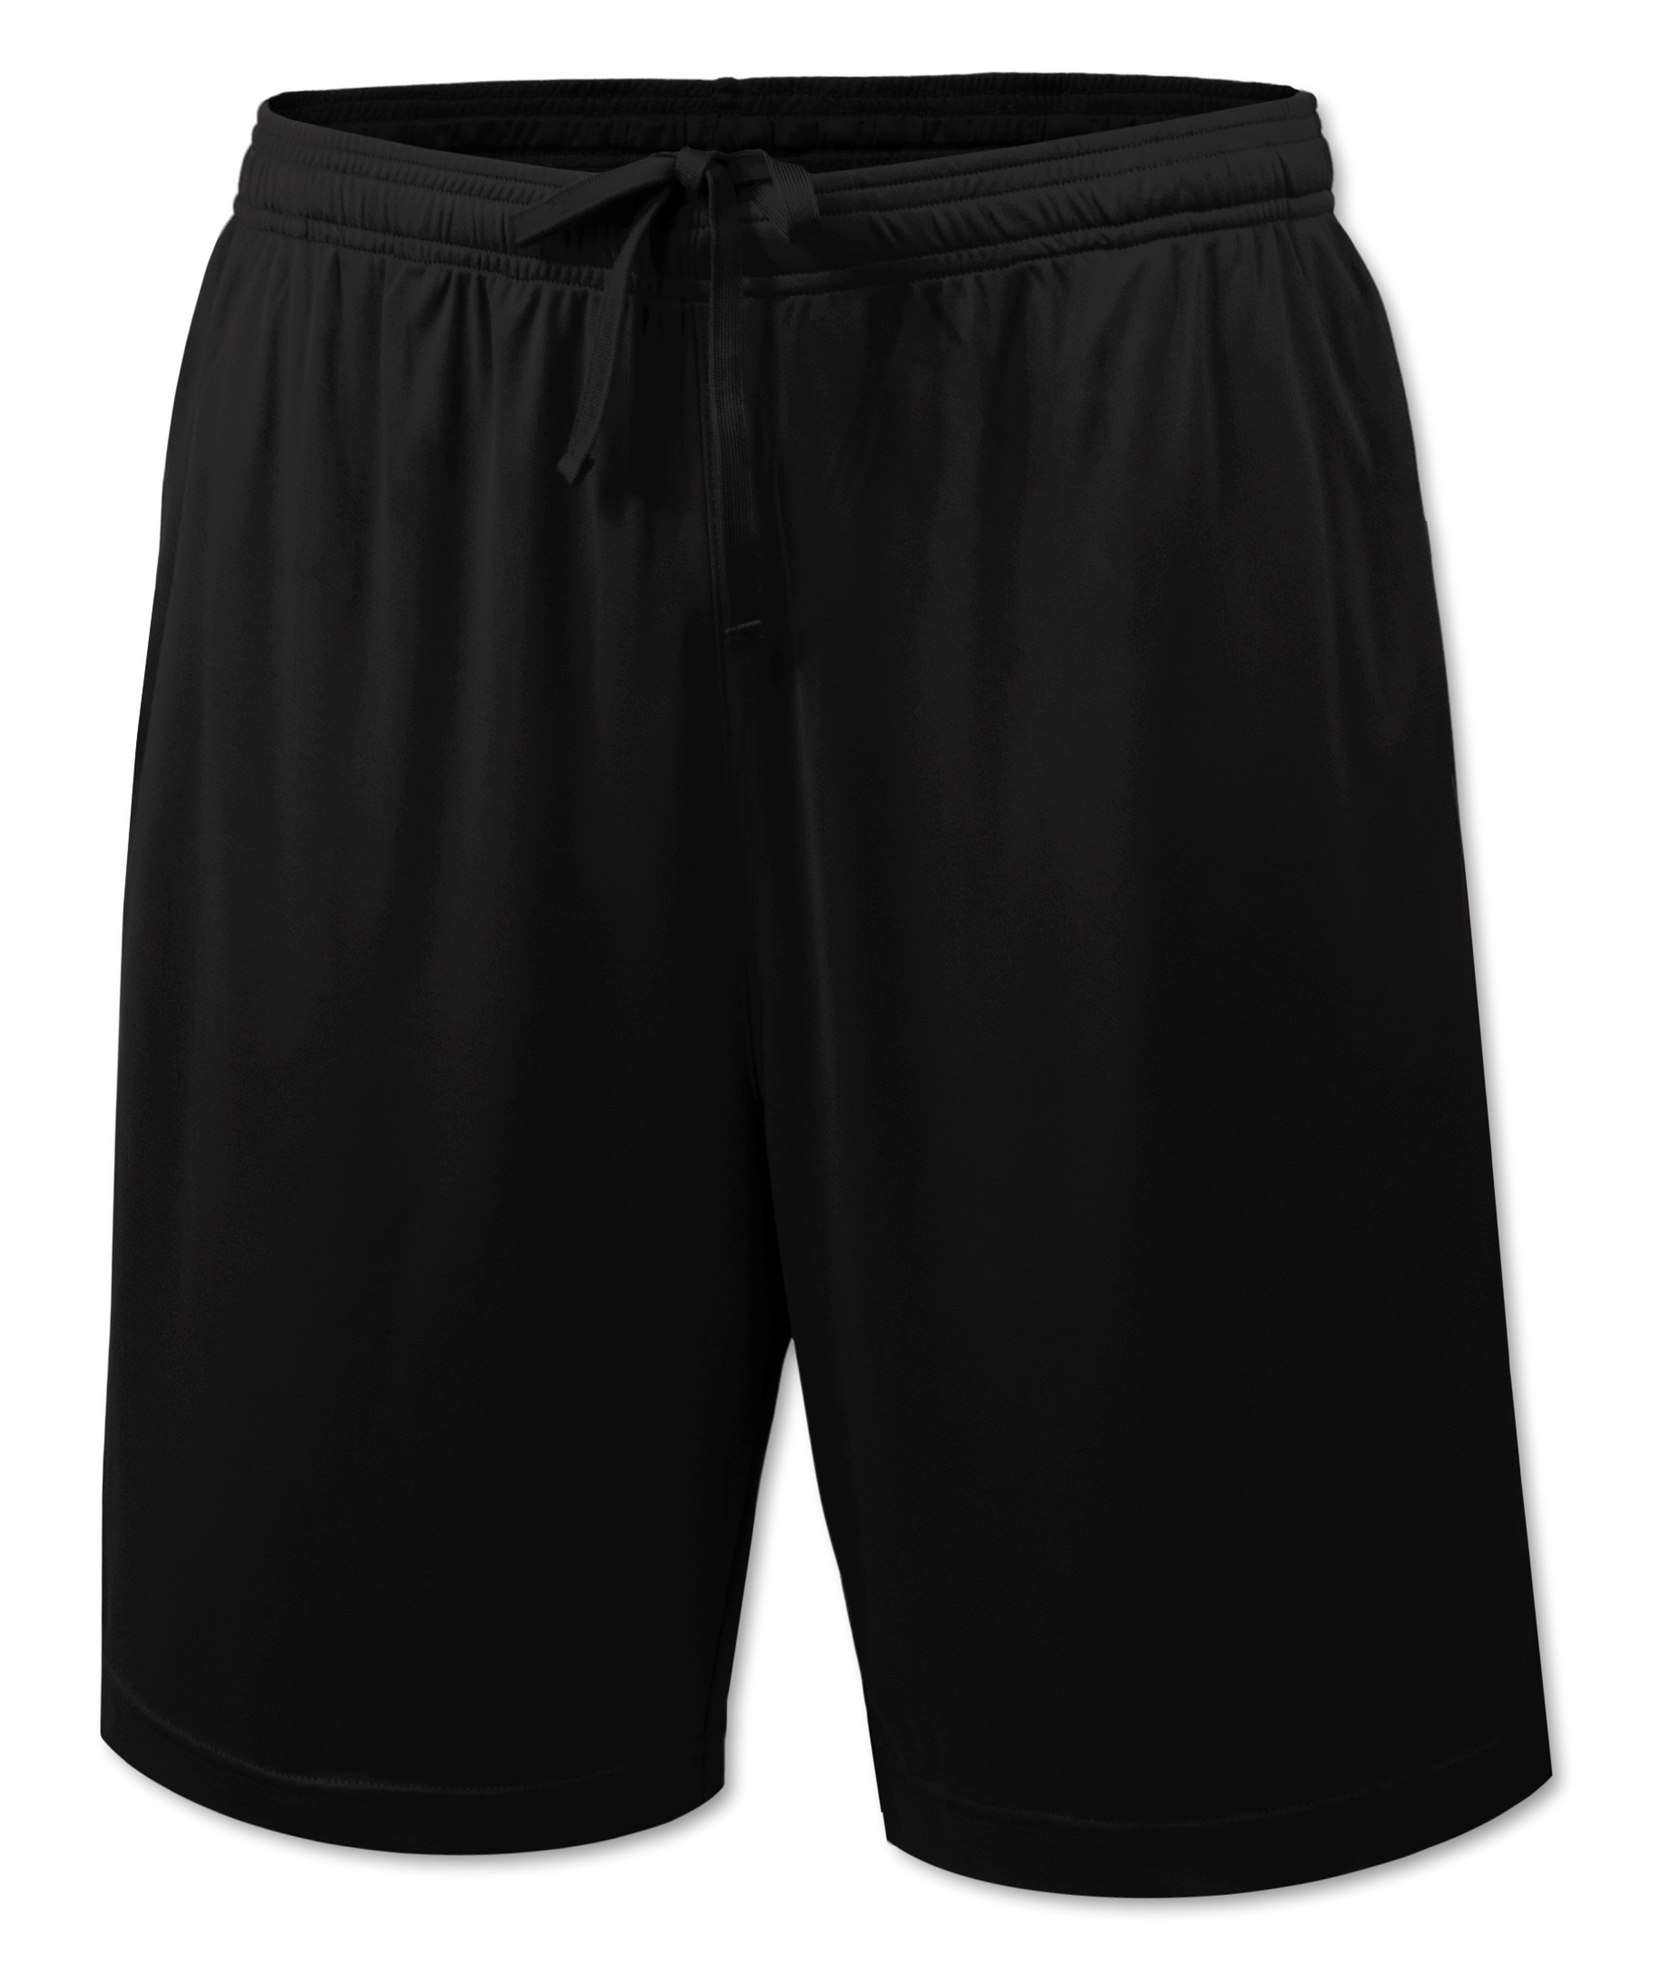 BAW Athletic Wear S707Y/S707HY - Youth XT 2 Pocket Short